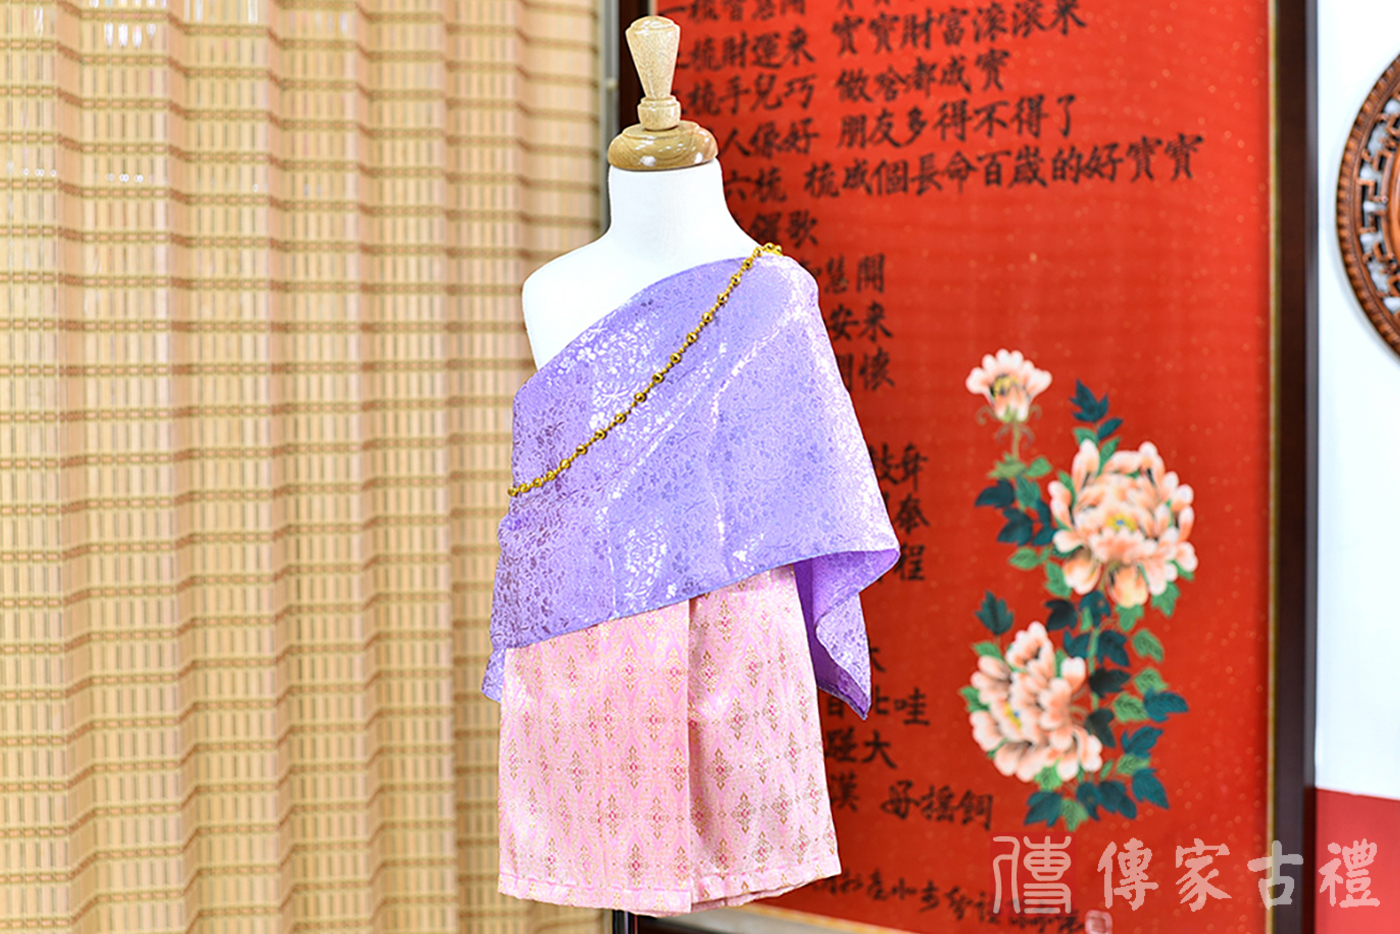 2024-02-23小孩皇室泰服古裝禮服。淺紫色的紋路披肩上衣搭配粉色泰國圖案紋路裙裝的泰式古裝禮服。照片集